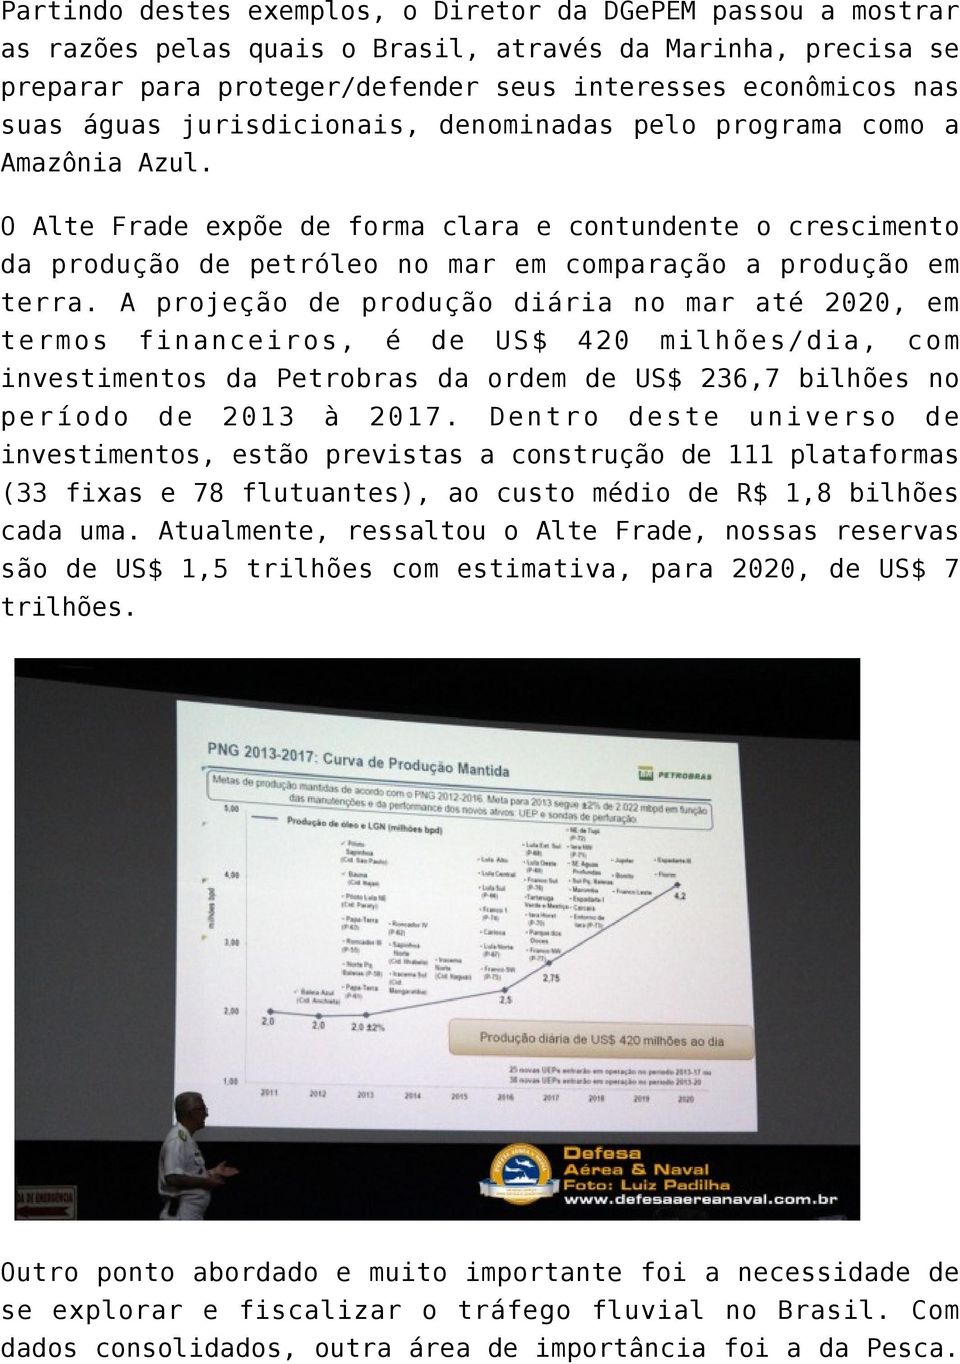 A projeção de produção diária no mar até 2020, em termos financeiros, é de US$ 420 milhões/dia, com investimentos da Petrobras da ordem de US$ 236,7 bilhões no período de 2013 à 2017.